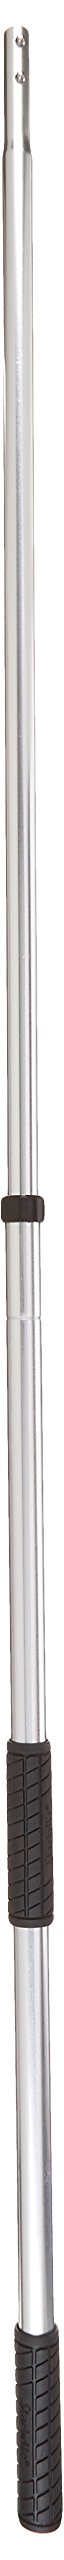 [AUSTRALIA] - Star brite Signature Series Premium Brush Handle Extending, Silver 